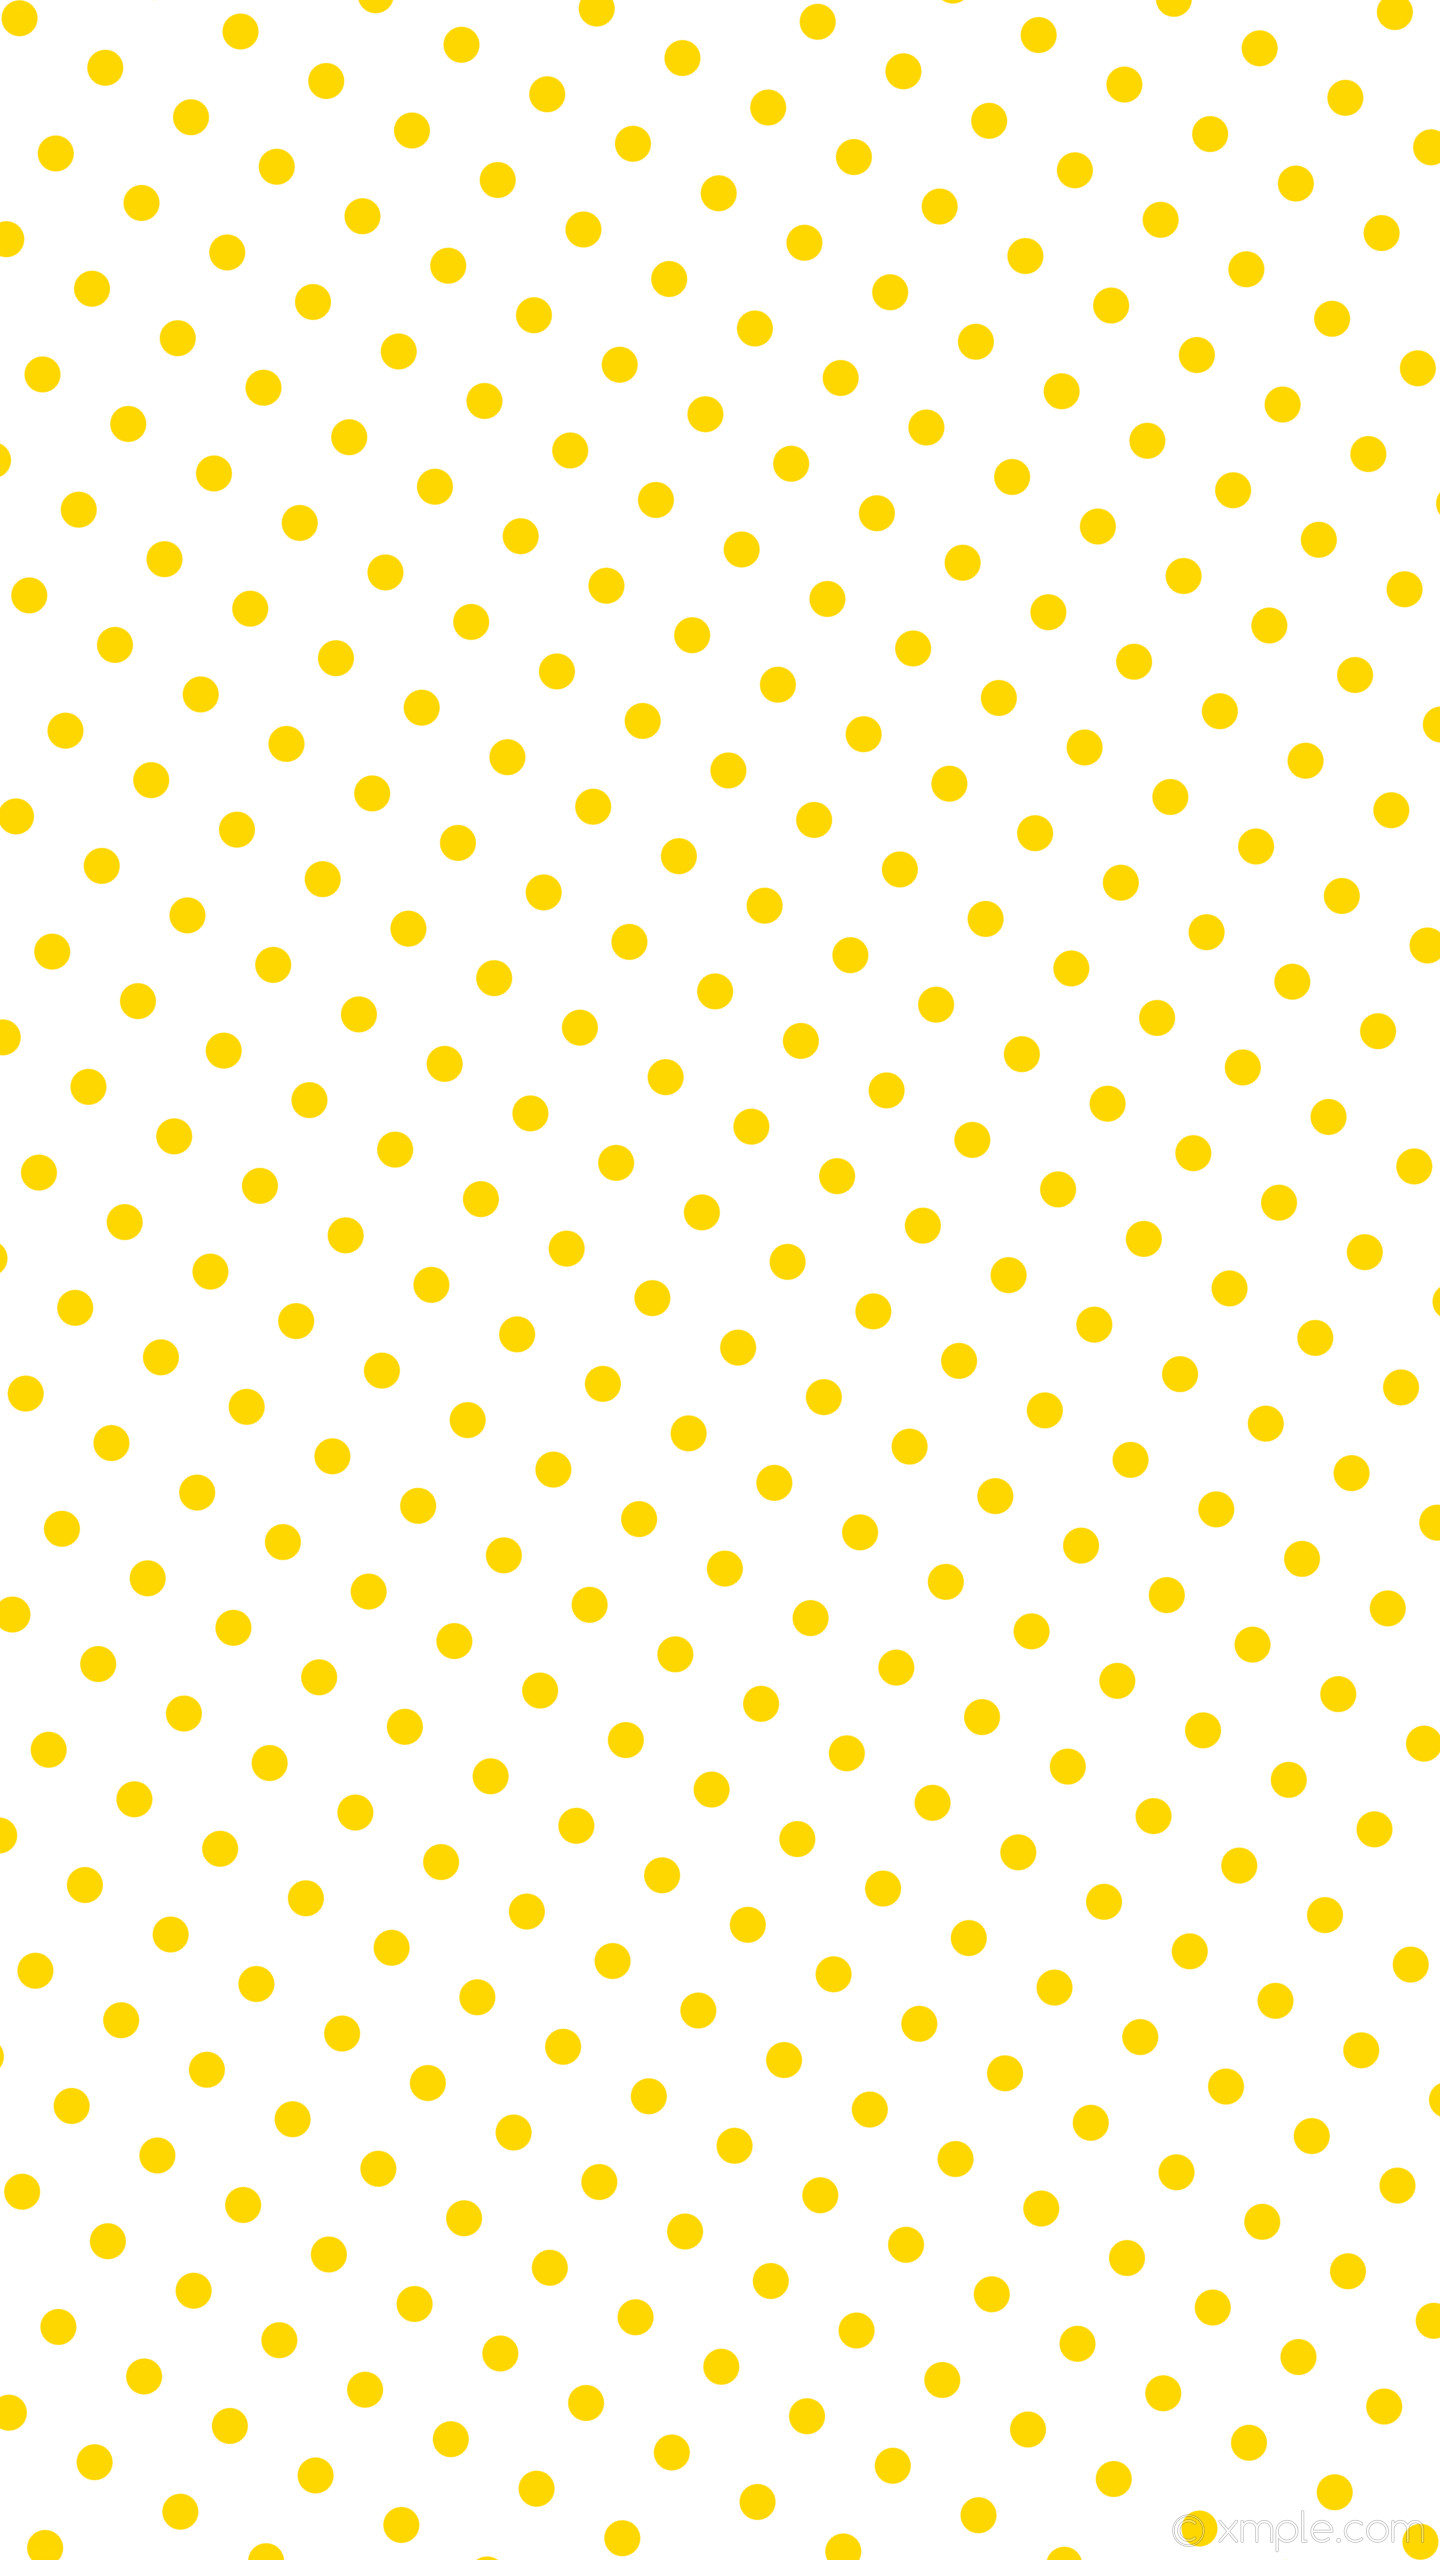 1440x2560 wallpaper yellow polka white spots dots gold #ffffff #ffd700 240Â° 36px 99px